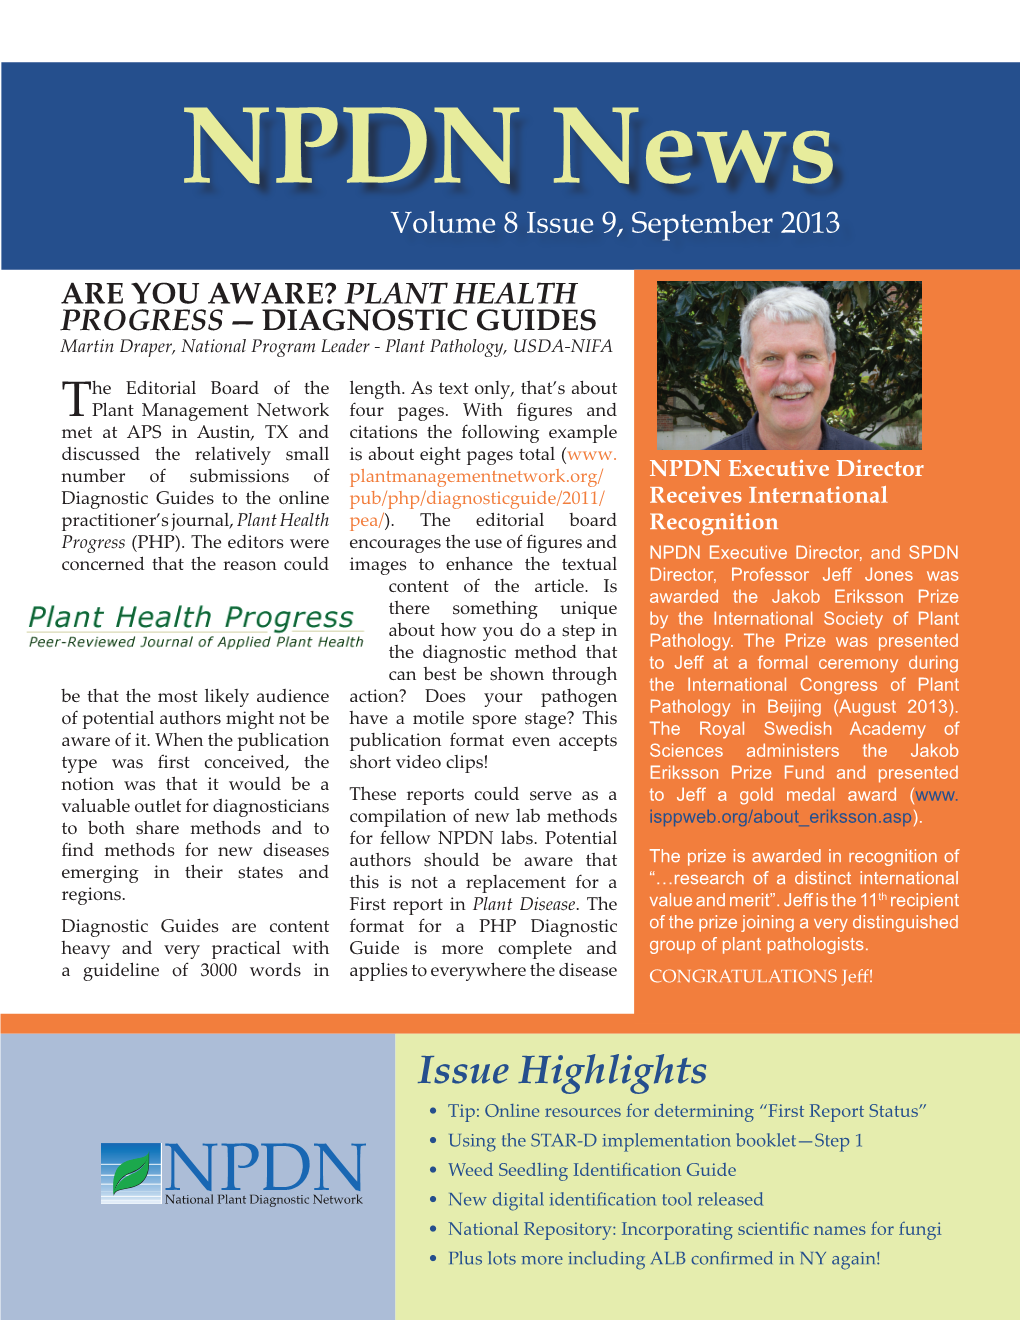 NPDN News Volume 8 Issue 9, September 2013